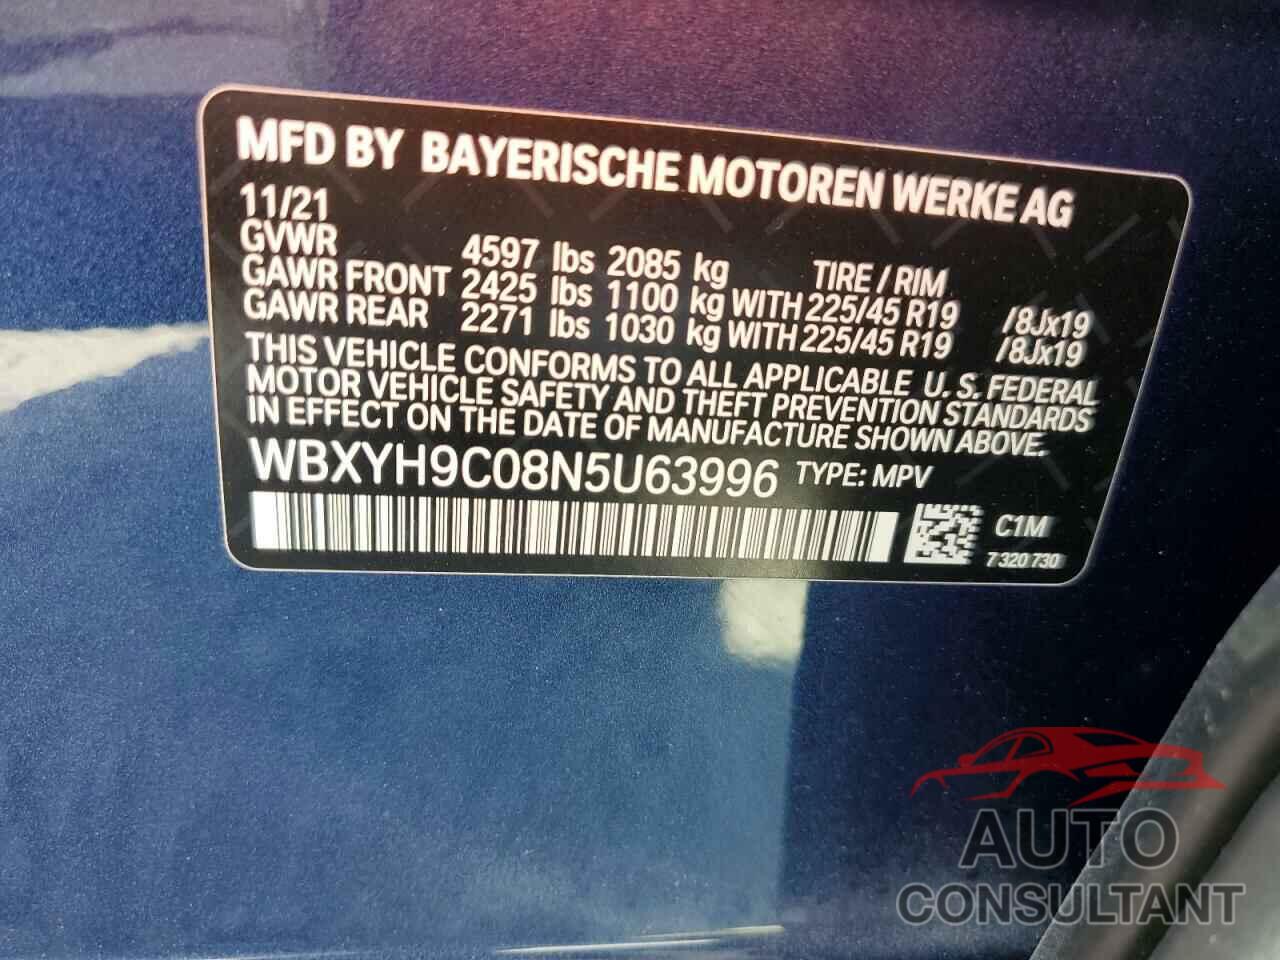 BMW X2 2022 - WBXYH9C08N5U63996